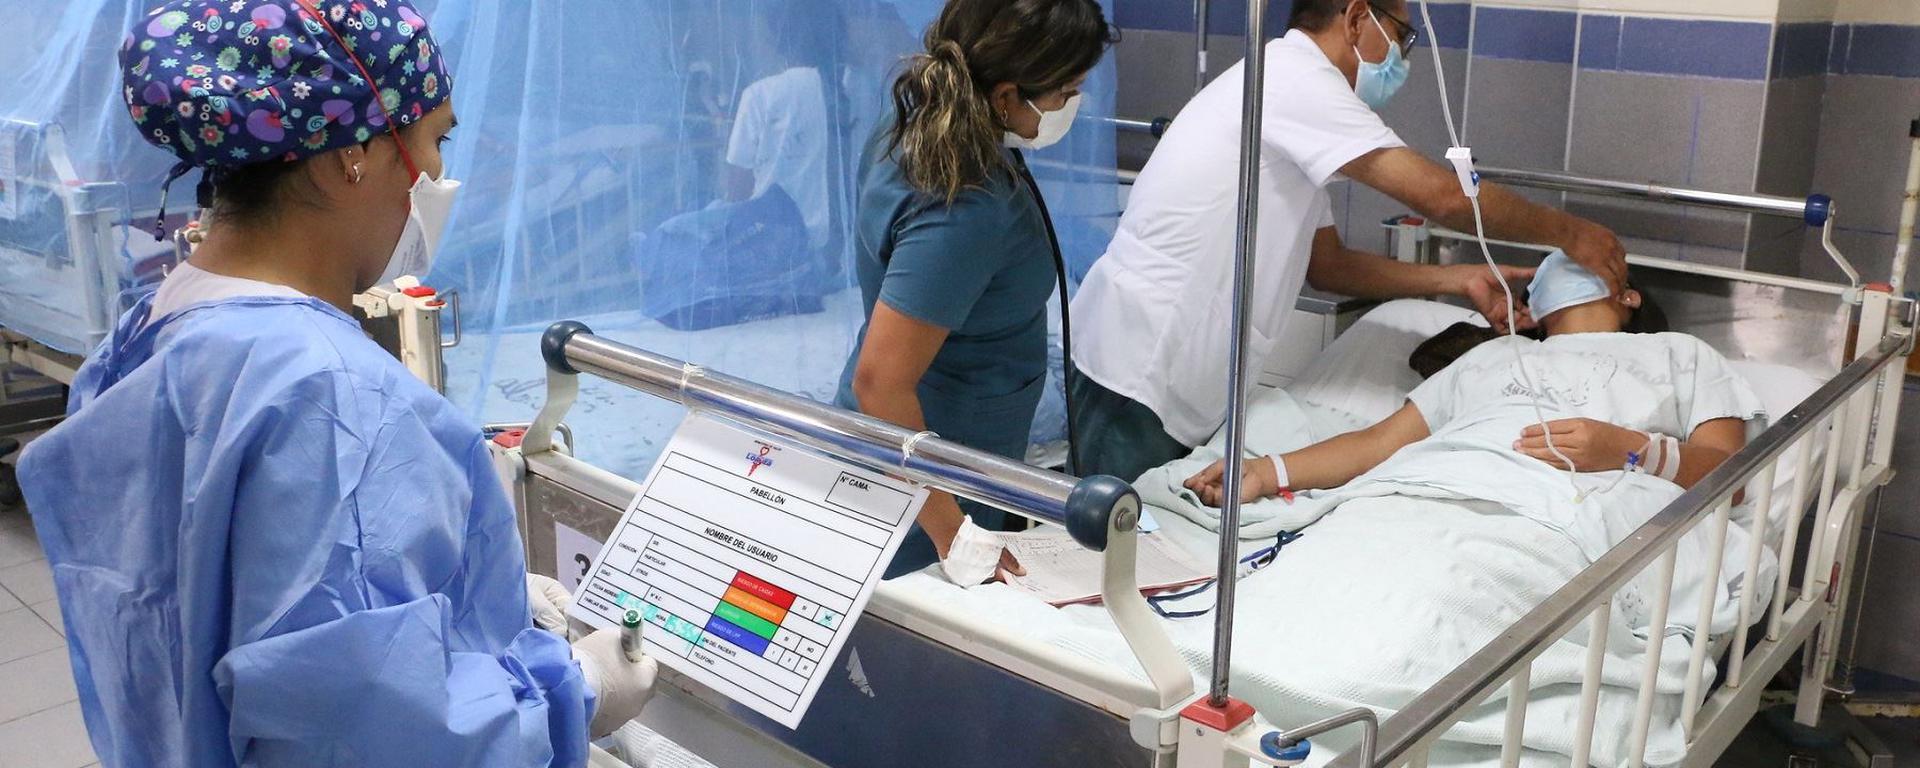 Surco tiene la segunda mayor letalidad por dengue de Lima: ¿Por qué ocurre esta situación?